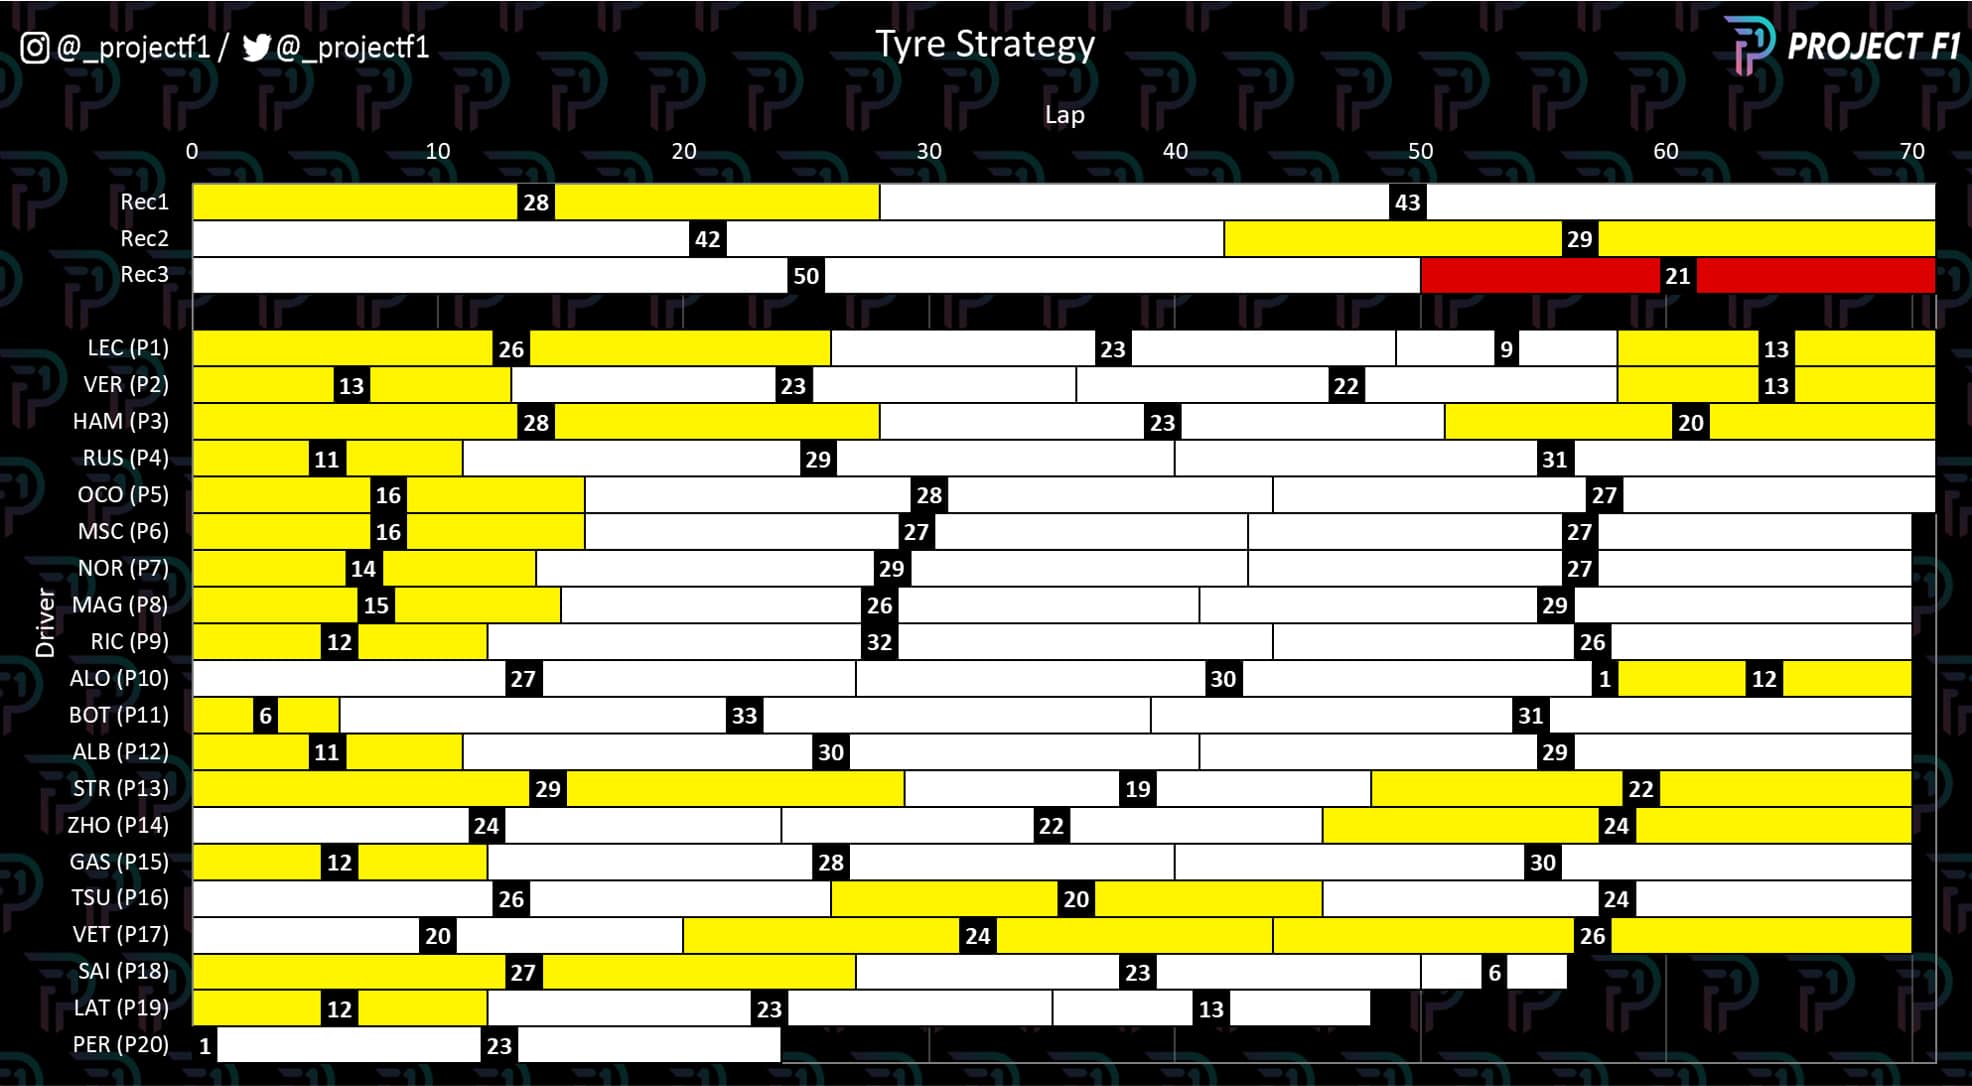 Austrian GP tyre strategy graph